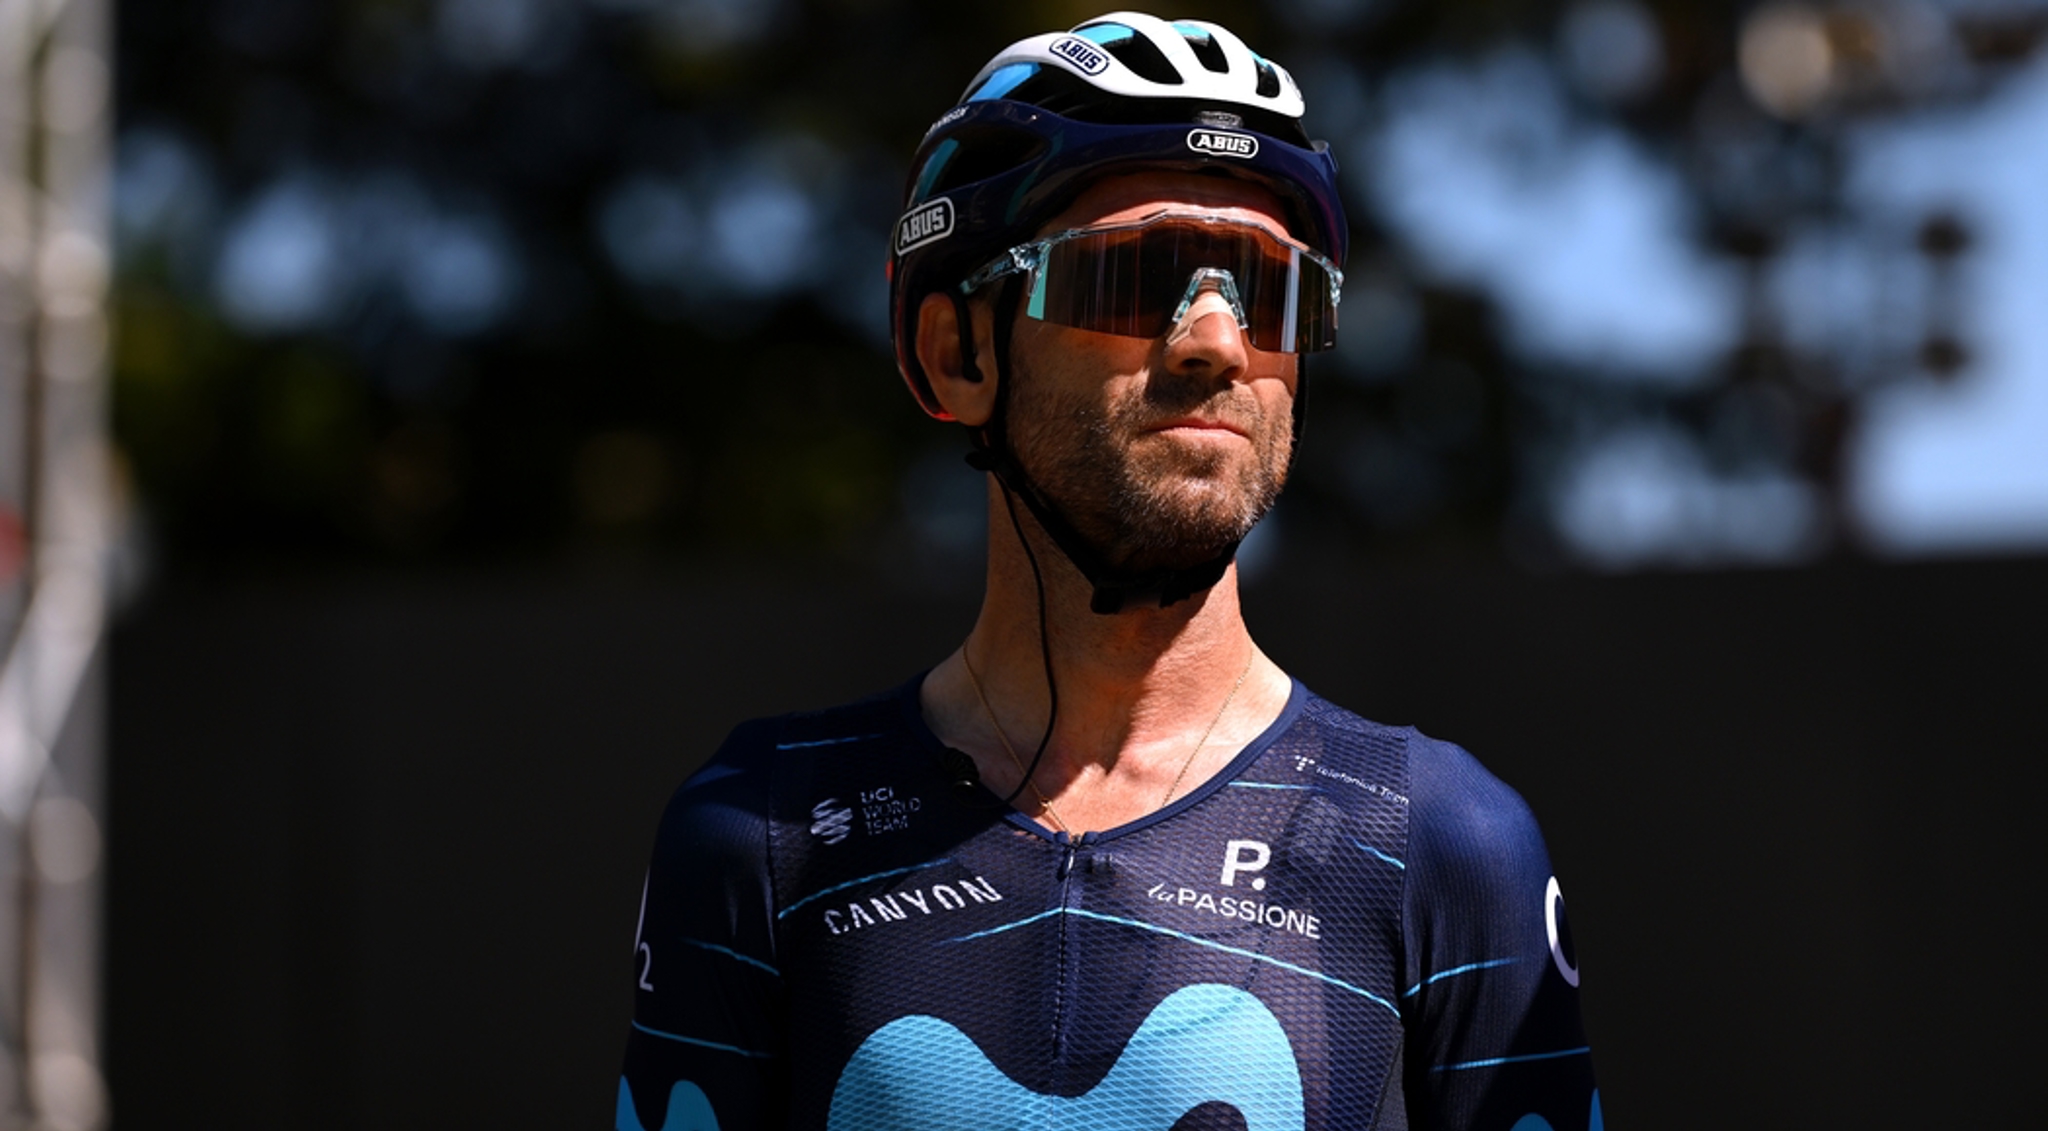 Former Vuelta champion Valverde hurt hit and run | SuperSport